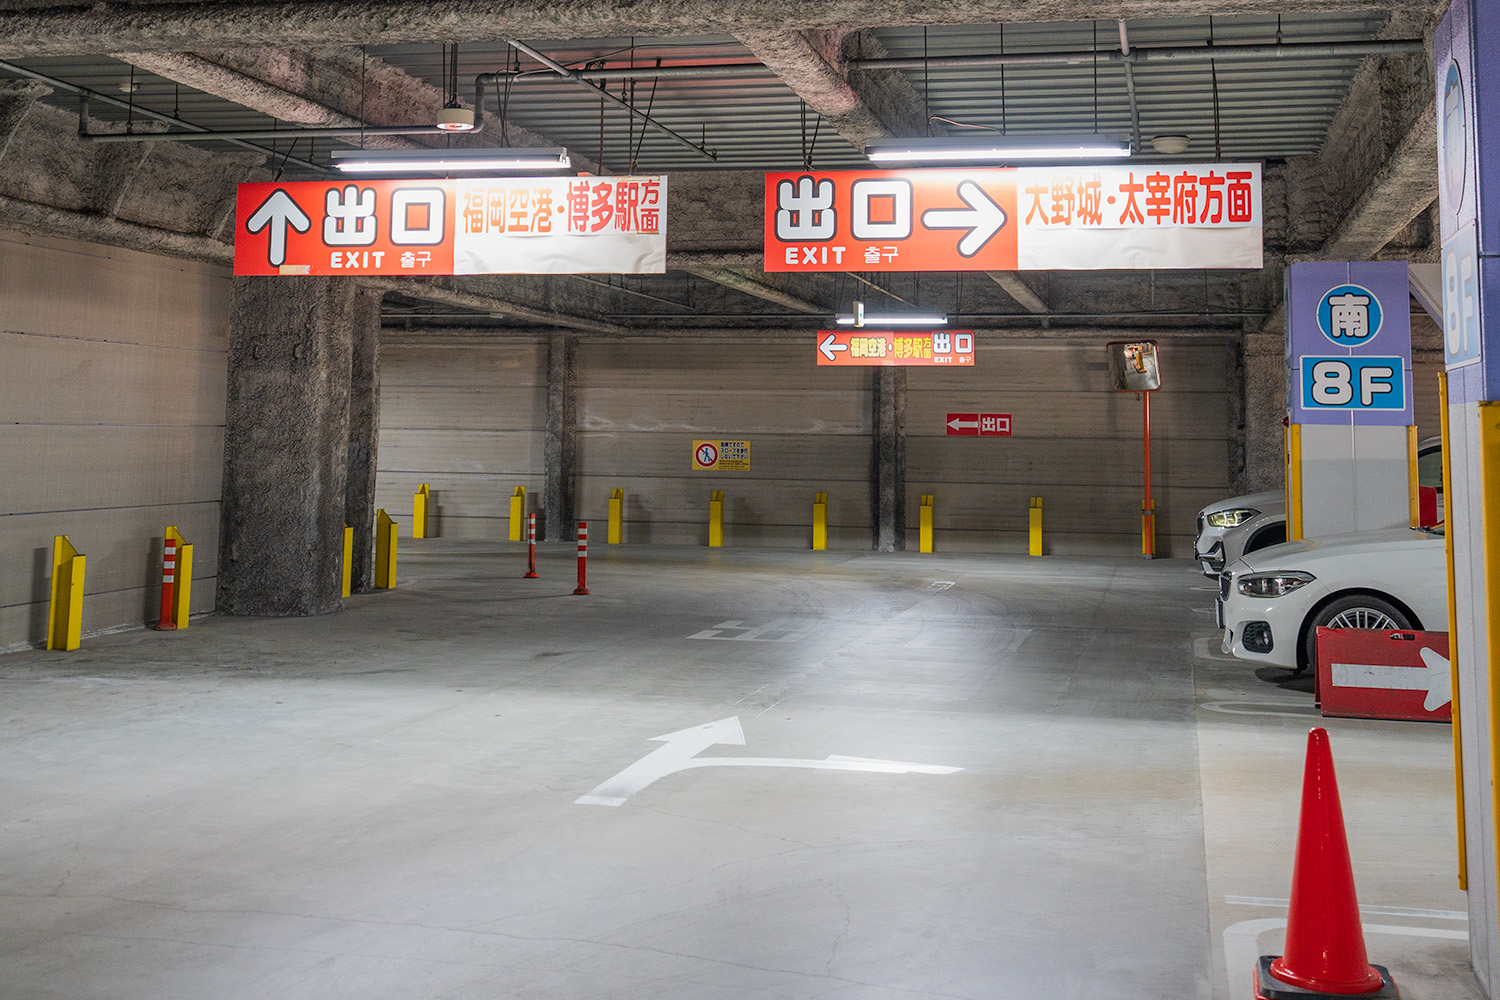 ヨドバシ博多 駐車場出口の案内板